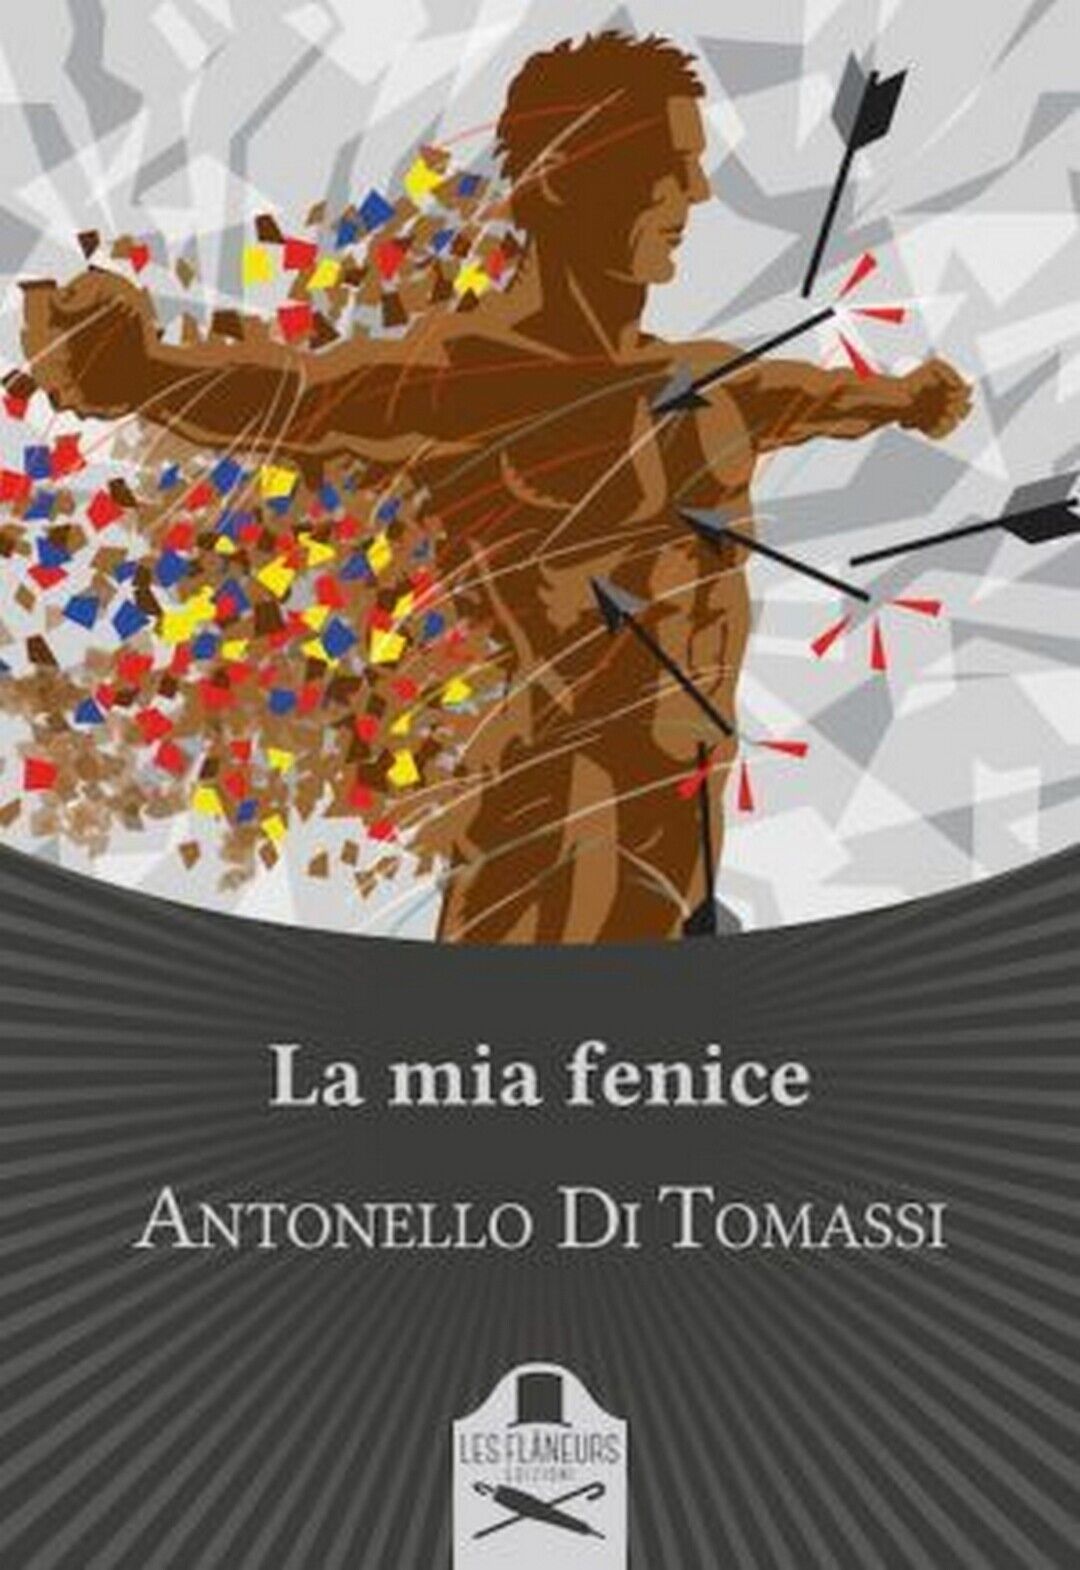 La mia fenice  di Antonello Di Tomassi ,  Les Flaneurs